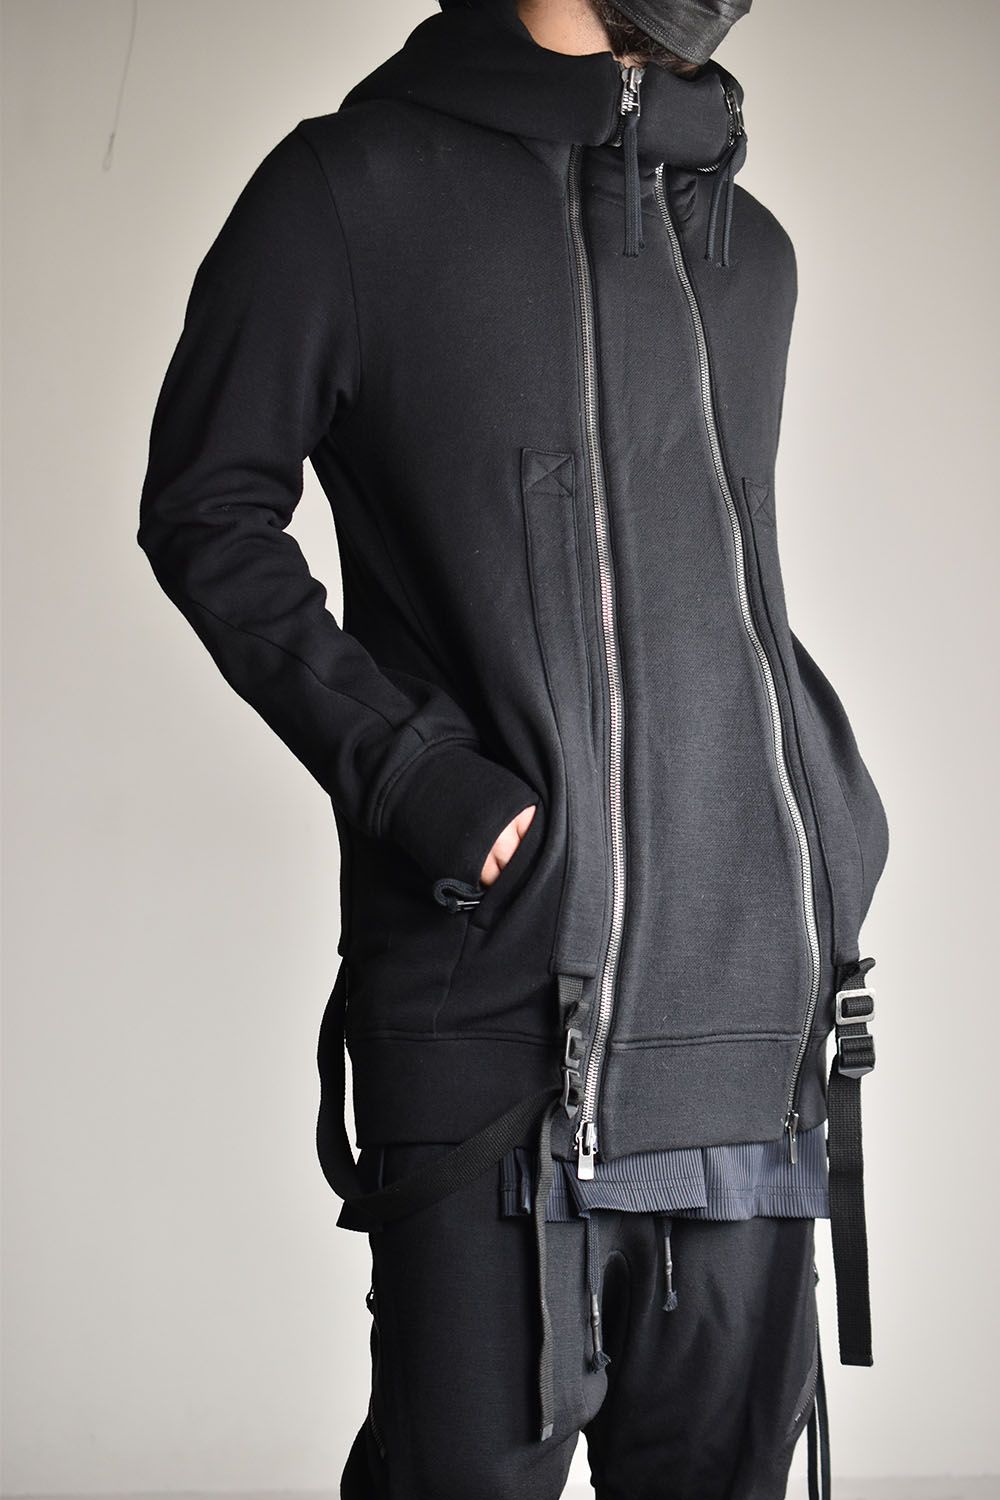 D.HYGEN - Wool Non-Ply Yarn Double Zip Suspender Hooded Jacket 